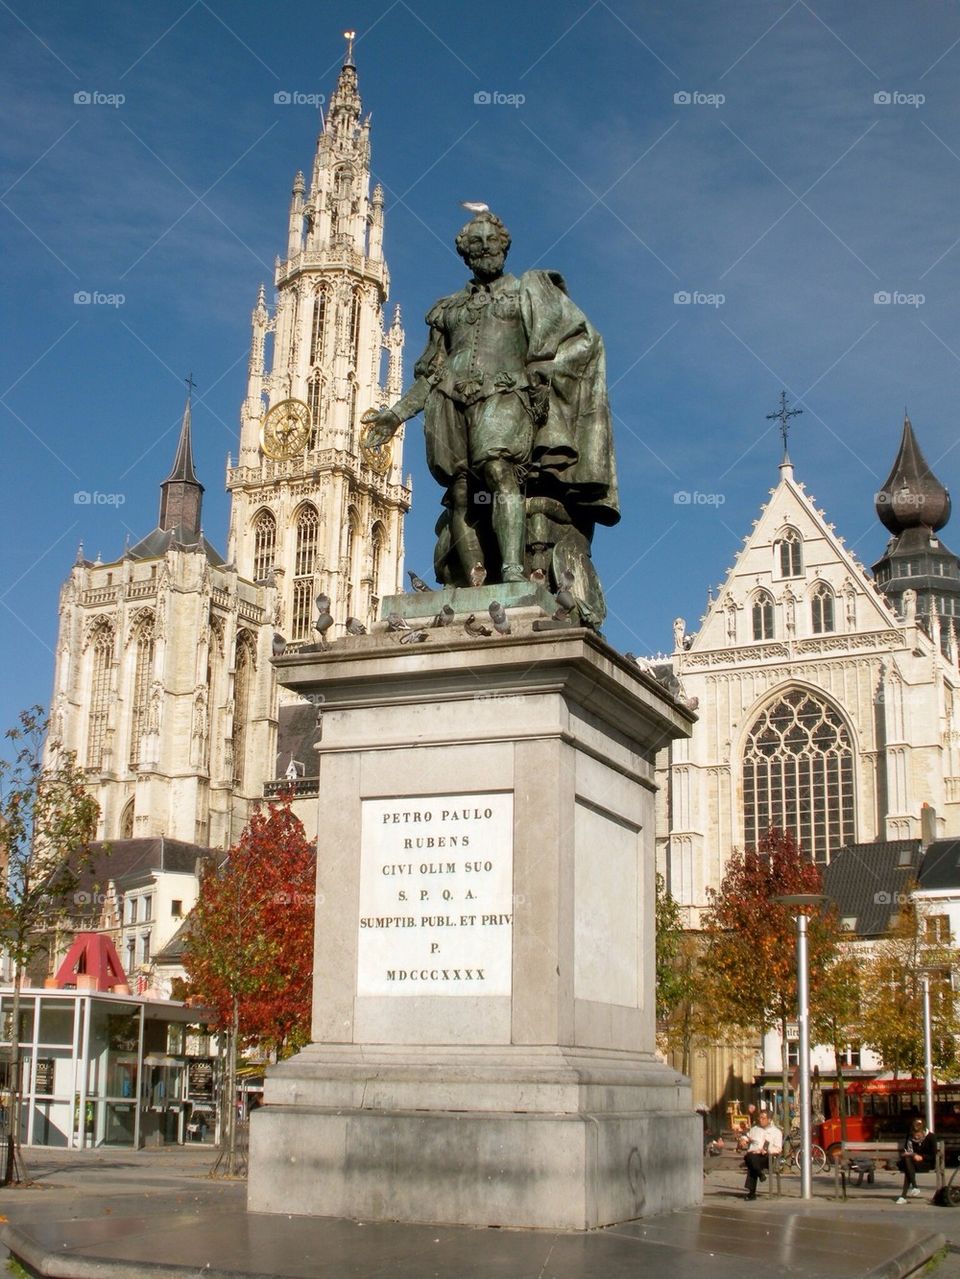 Paul Rubens statue in front of De Kathedraal, Antwerp Belgium 